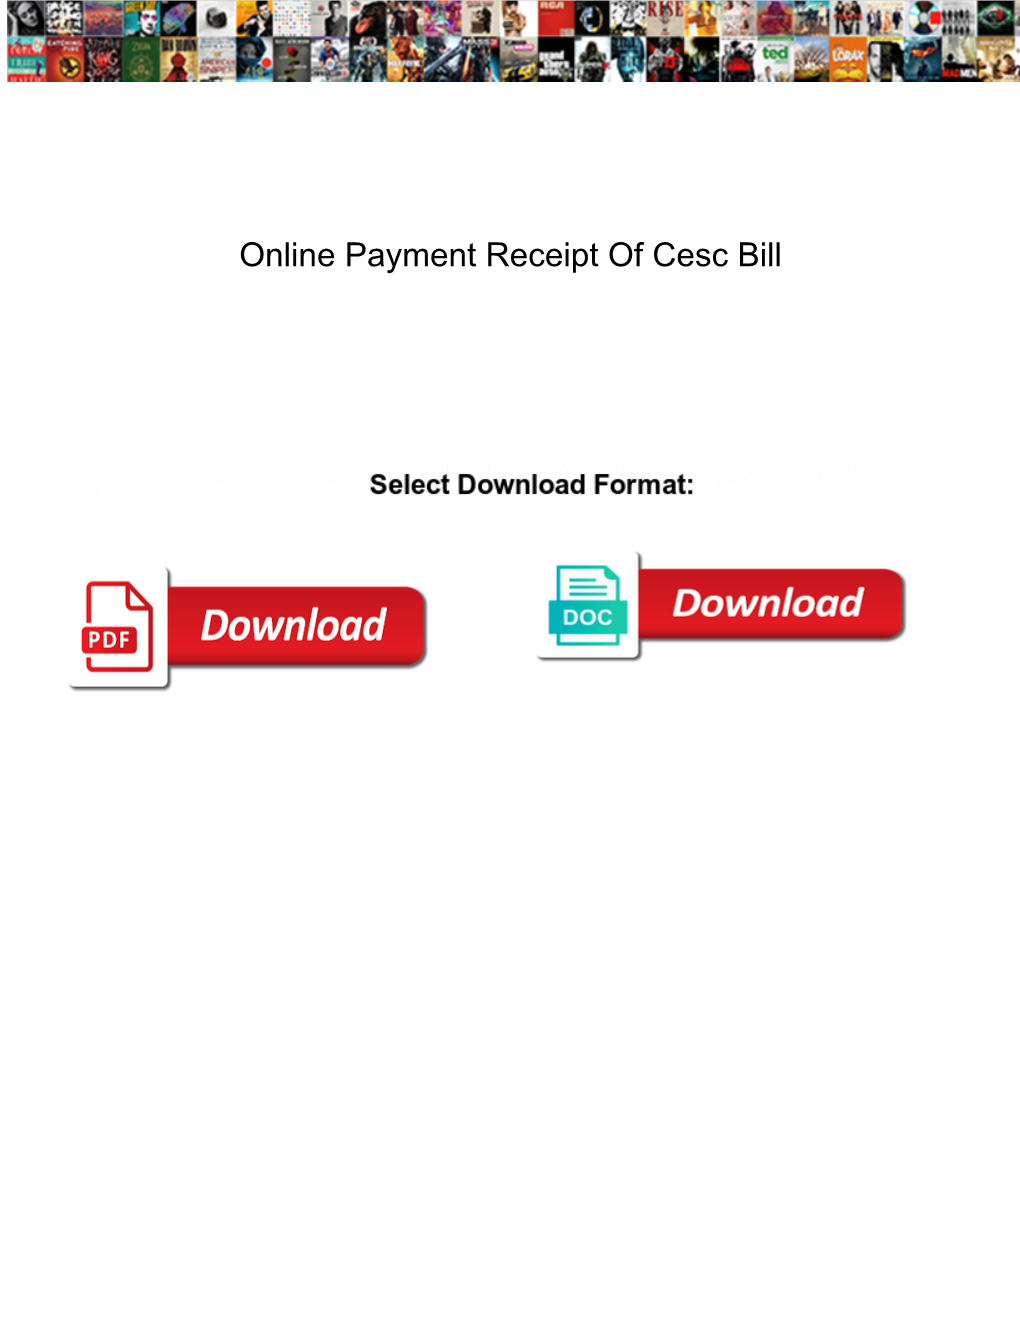 Online Payment Receipt of Cesc Bill